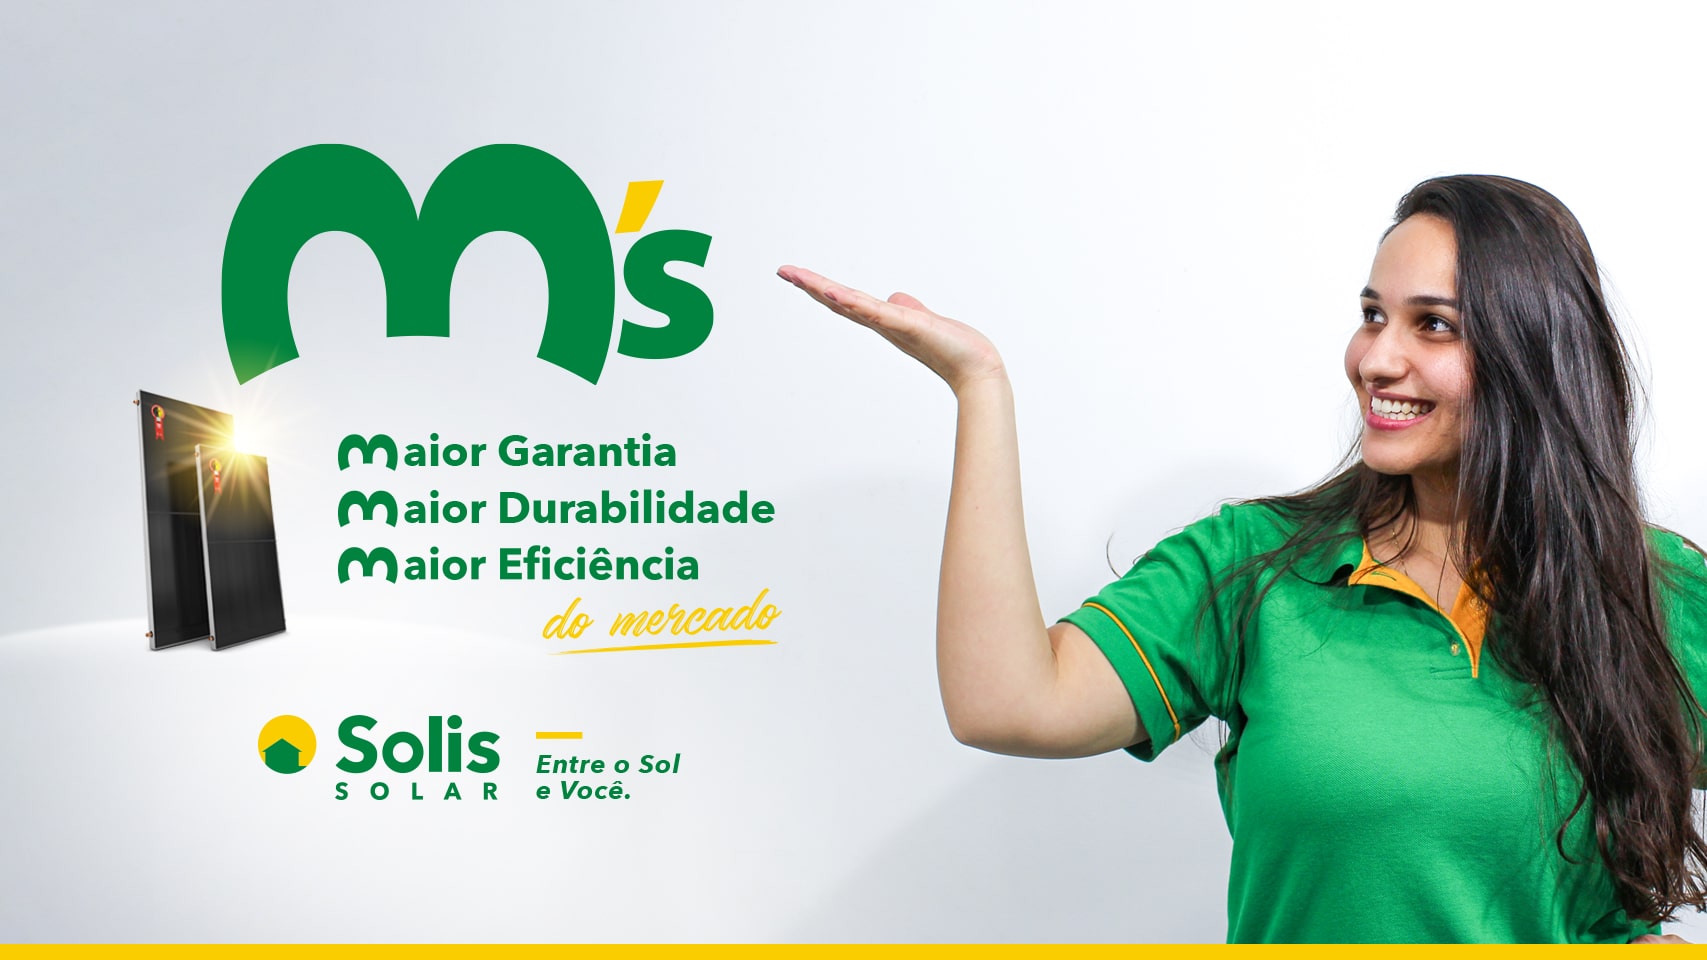 3M’s SOLIS: coletores de maior durabilidade, maior eficiência e maior garantia do Brasil